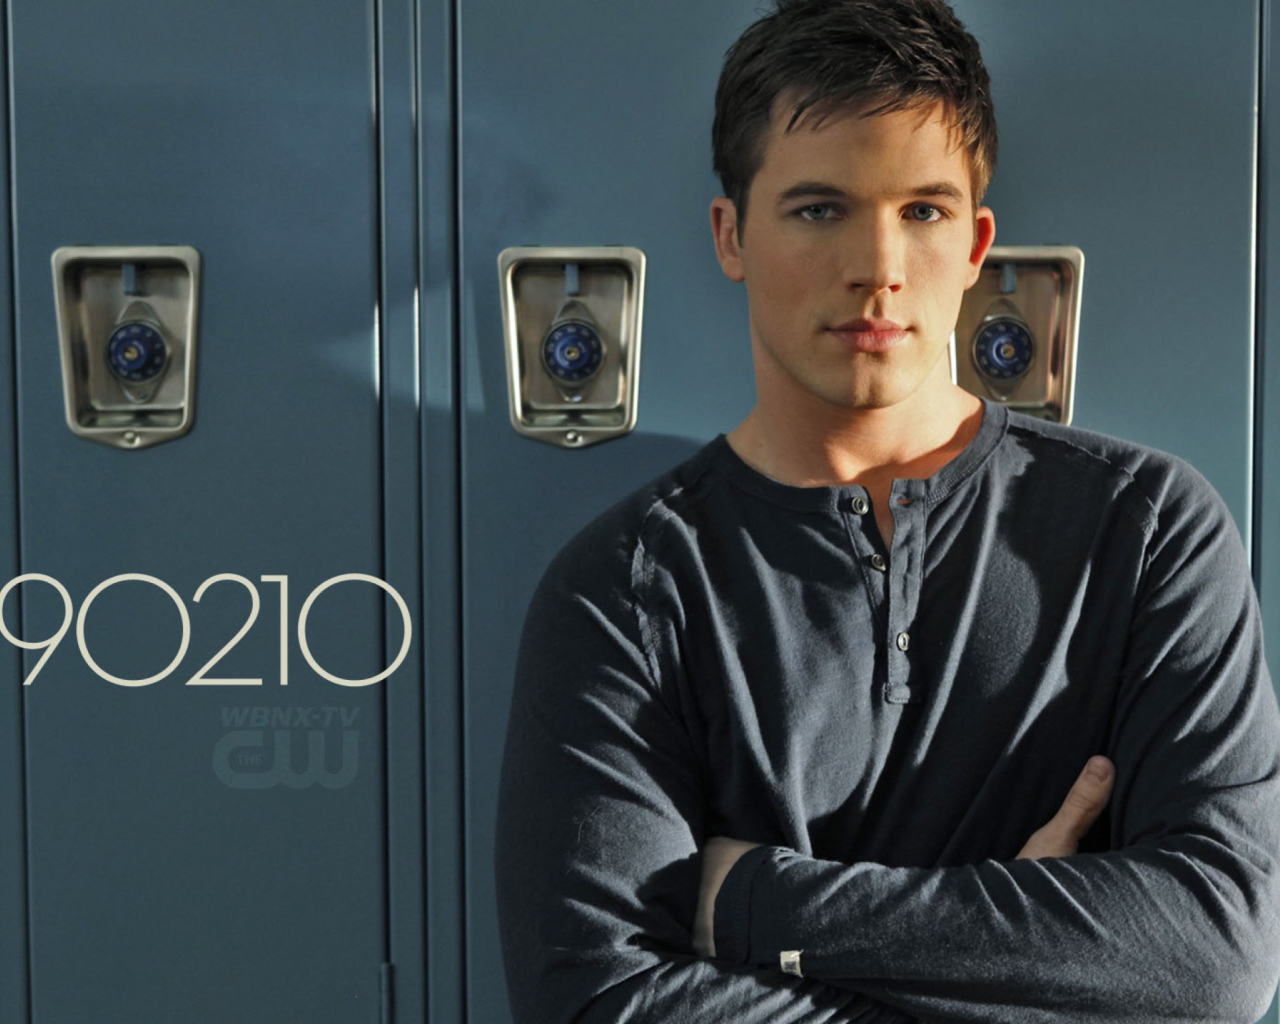 Das Matt Lanter - 90210 Wallpaper 1280x1024